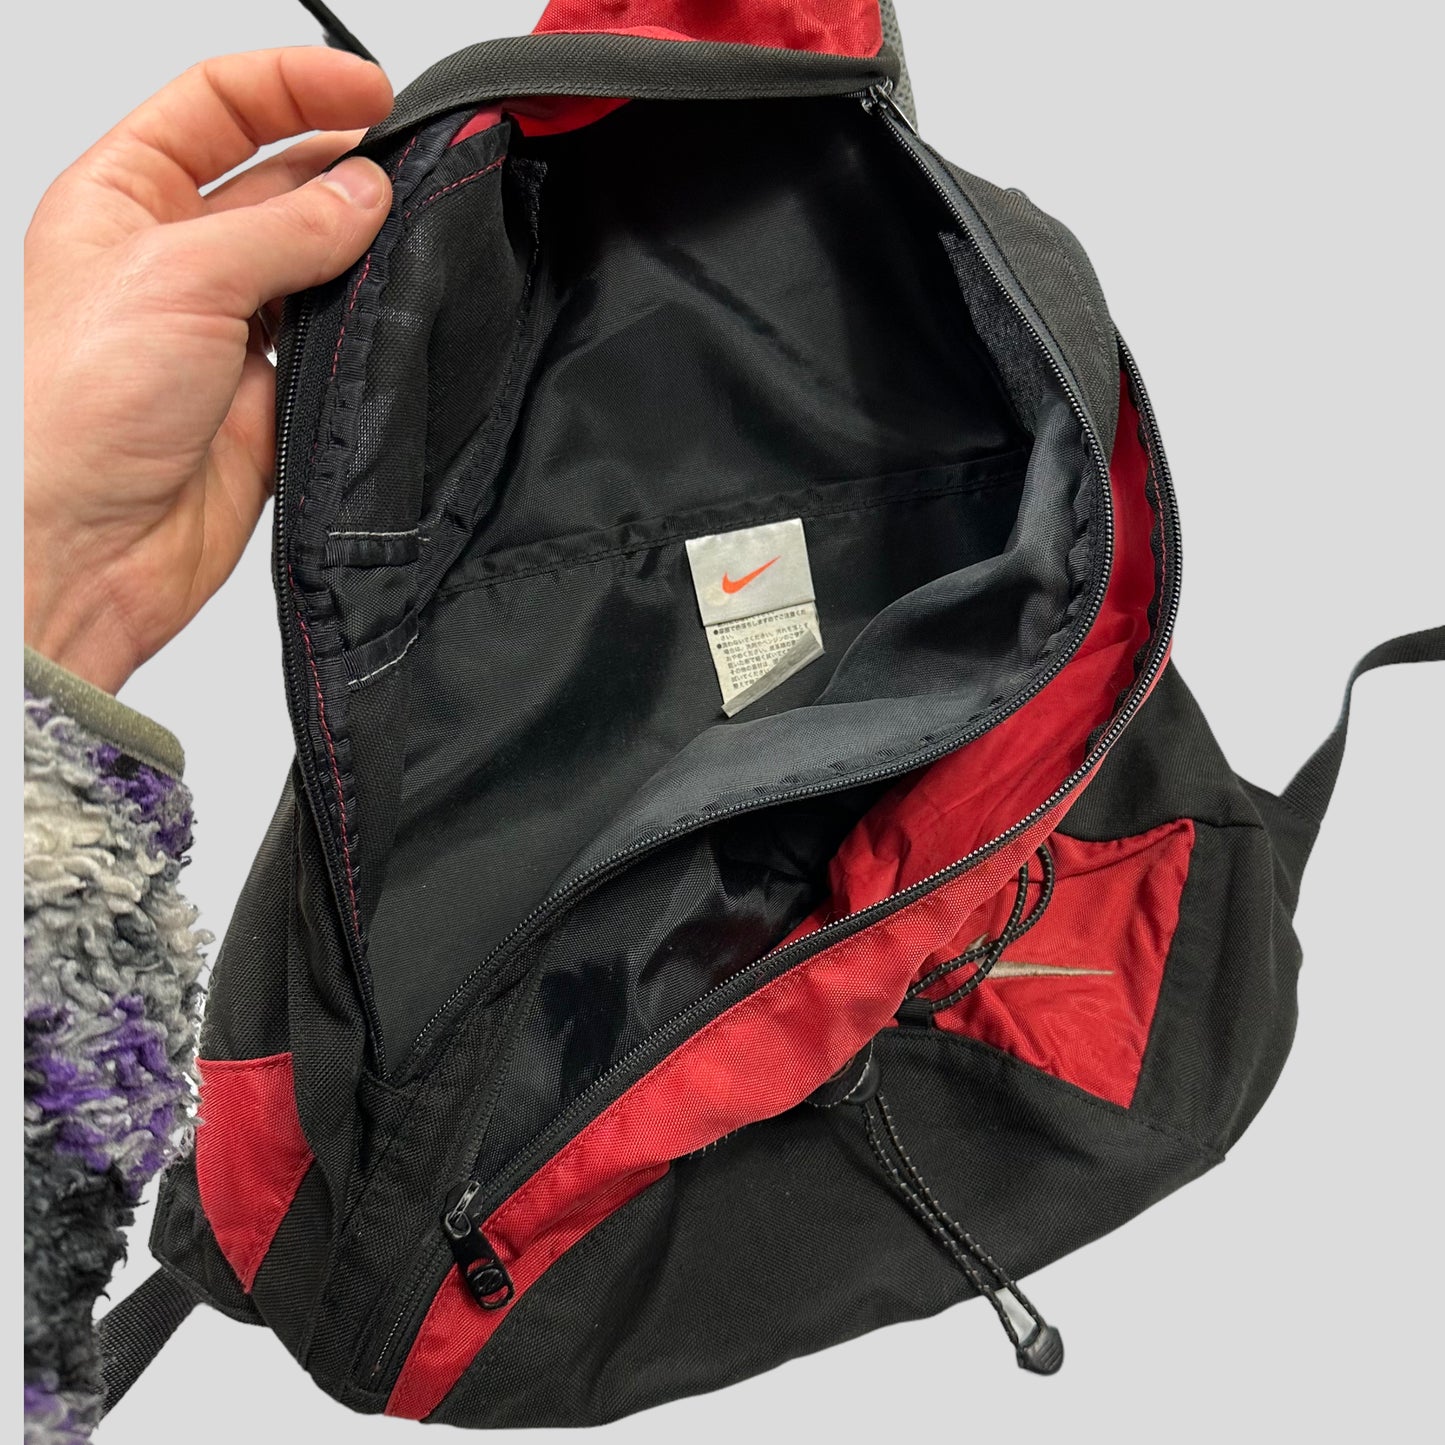 Nike 2006 Utility 3m Tri-harness Bag